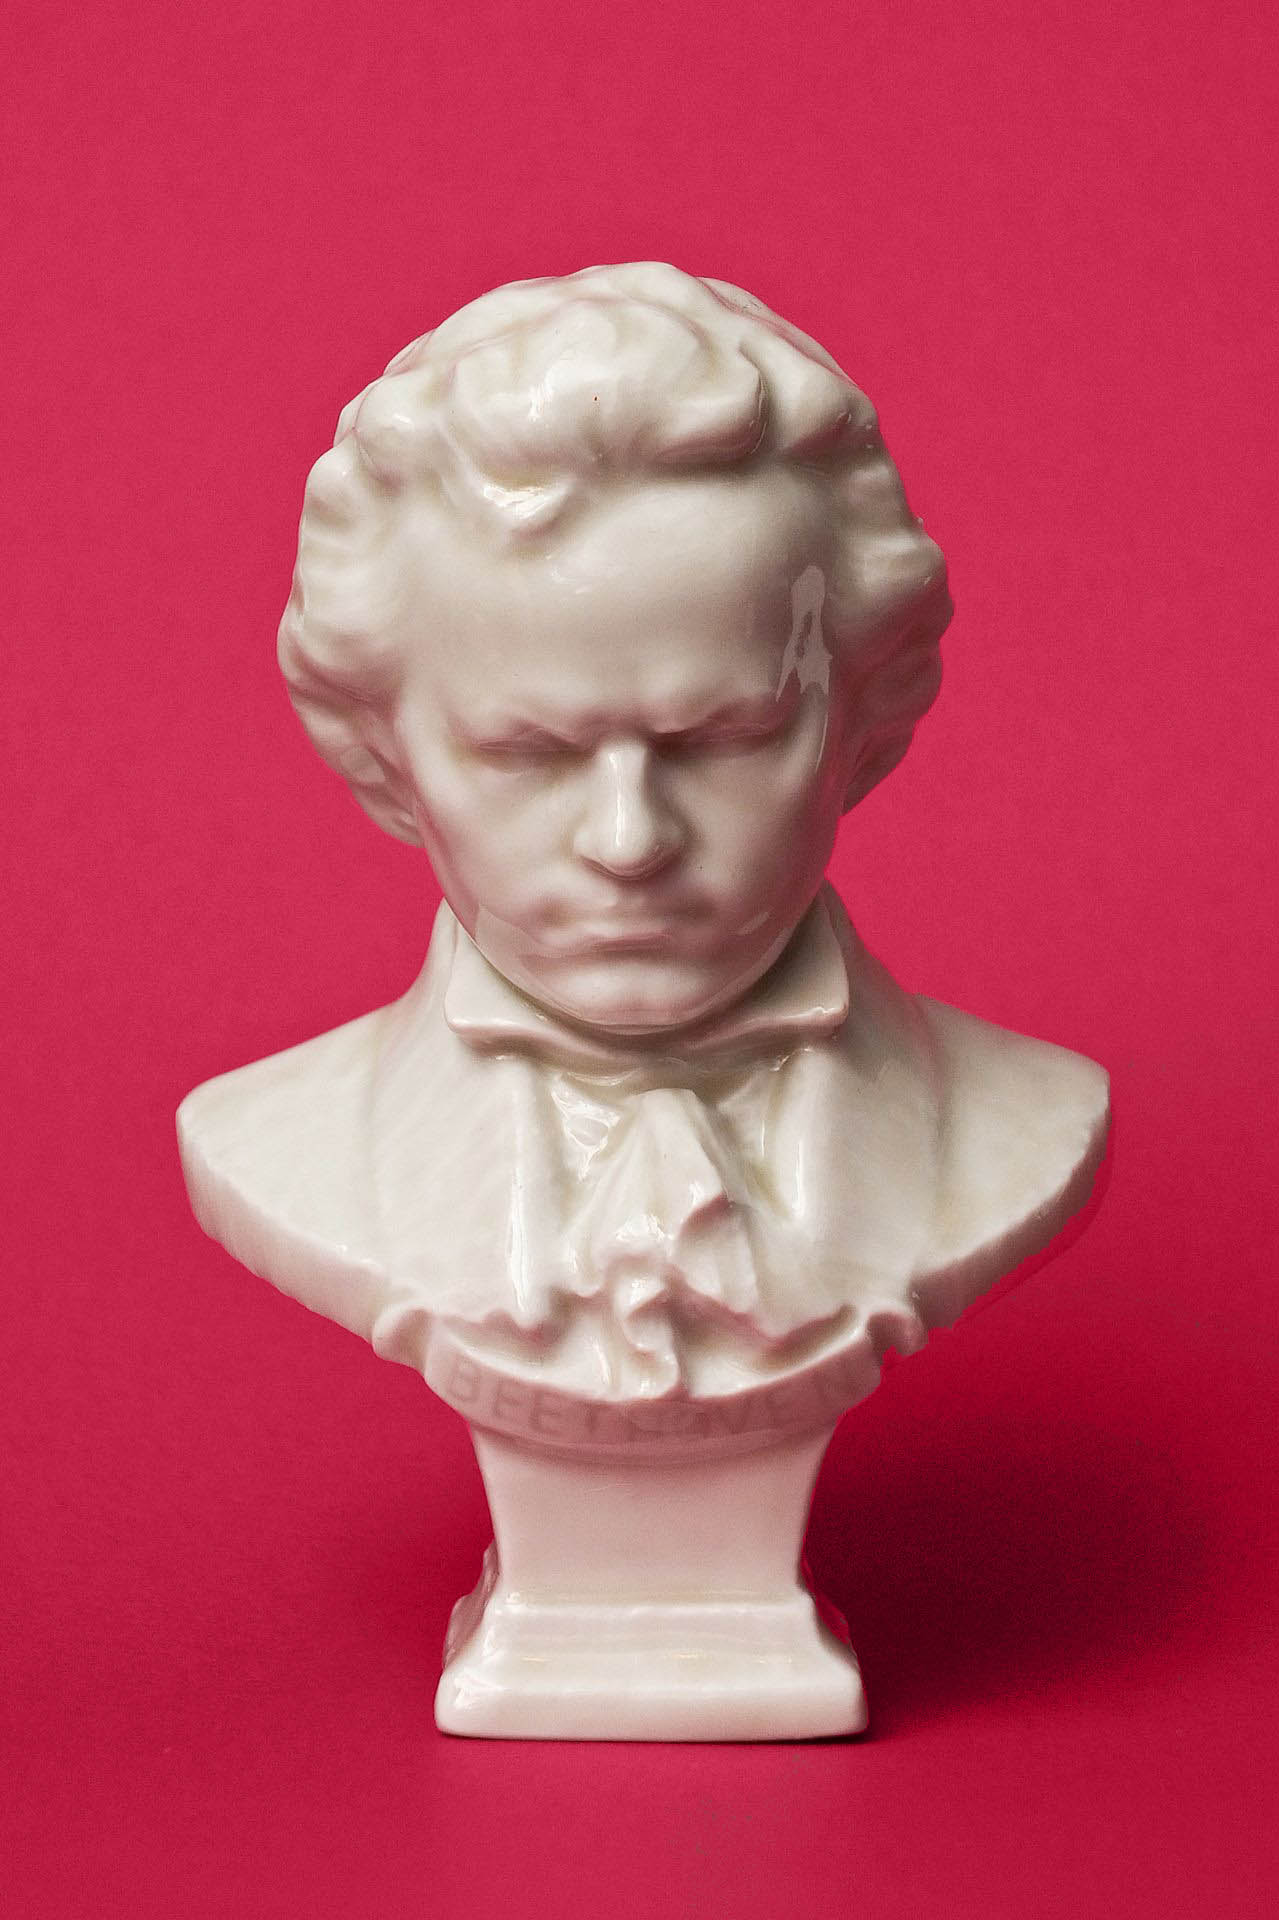 Kőbányai Porcelángyár Beethoven büszt